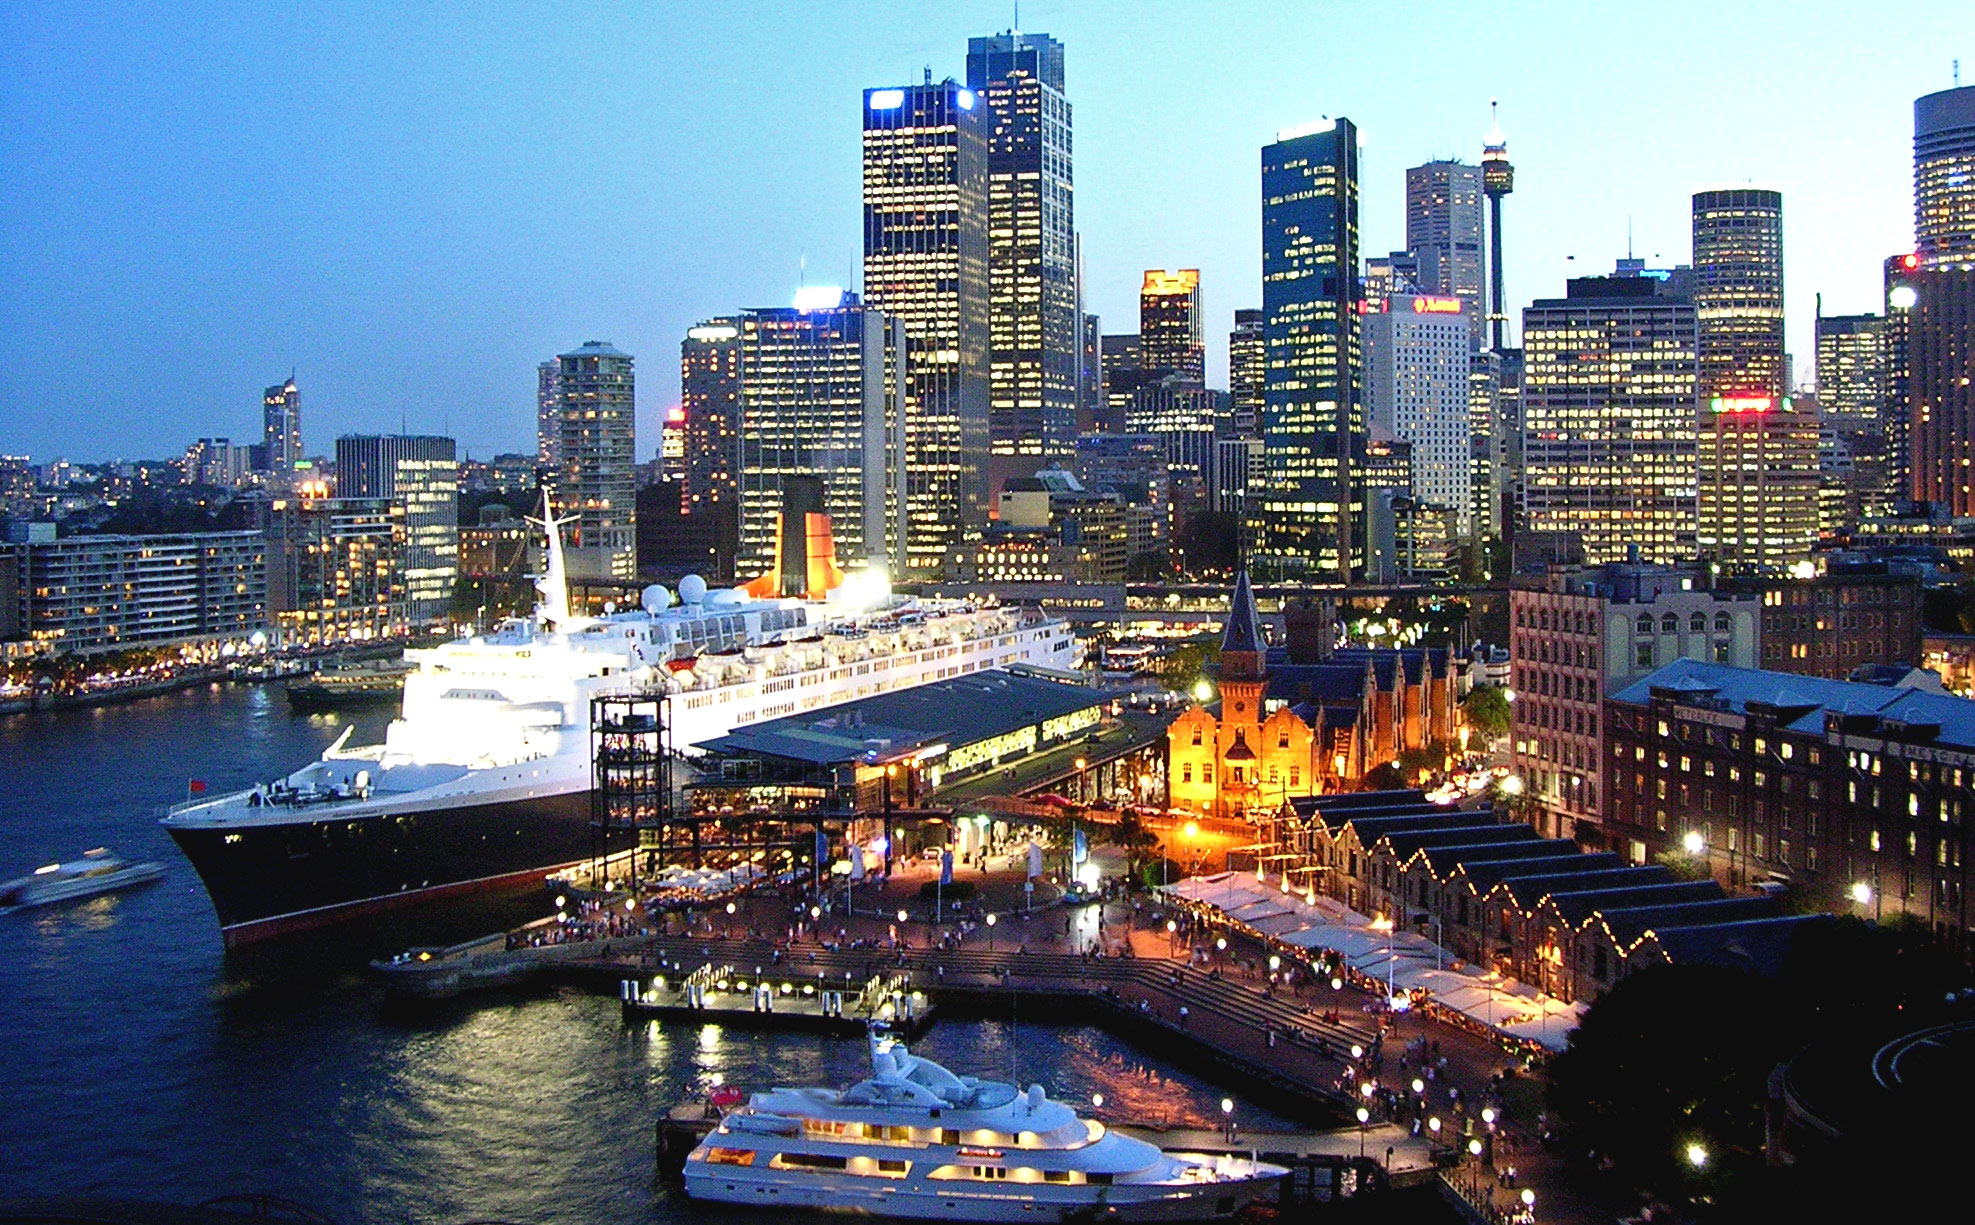 QE2 in Sydney Harbor